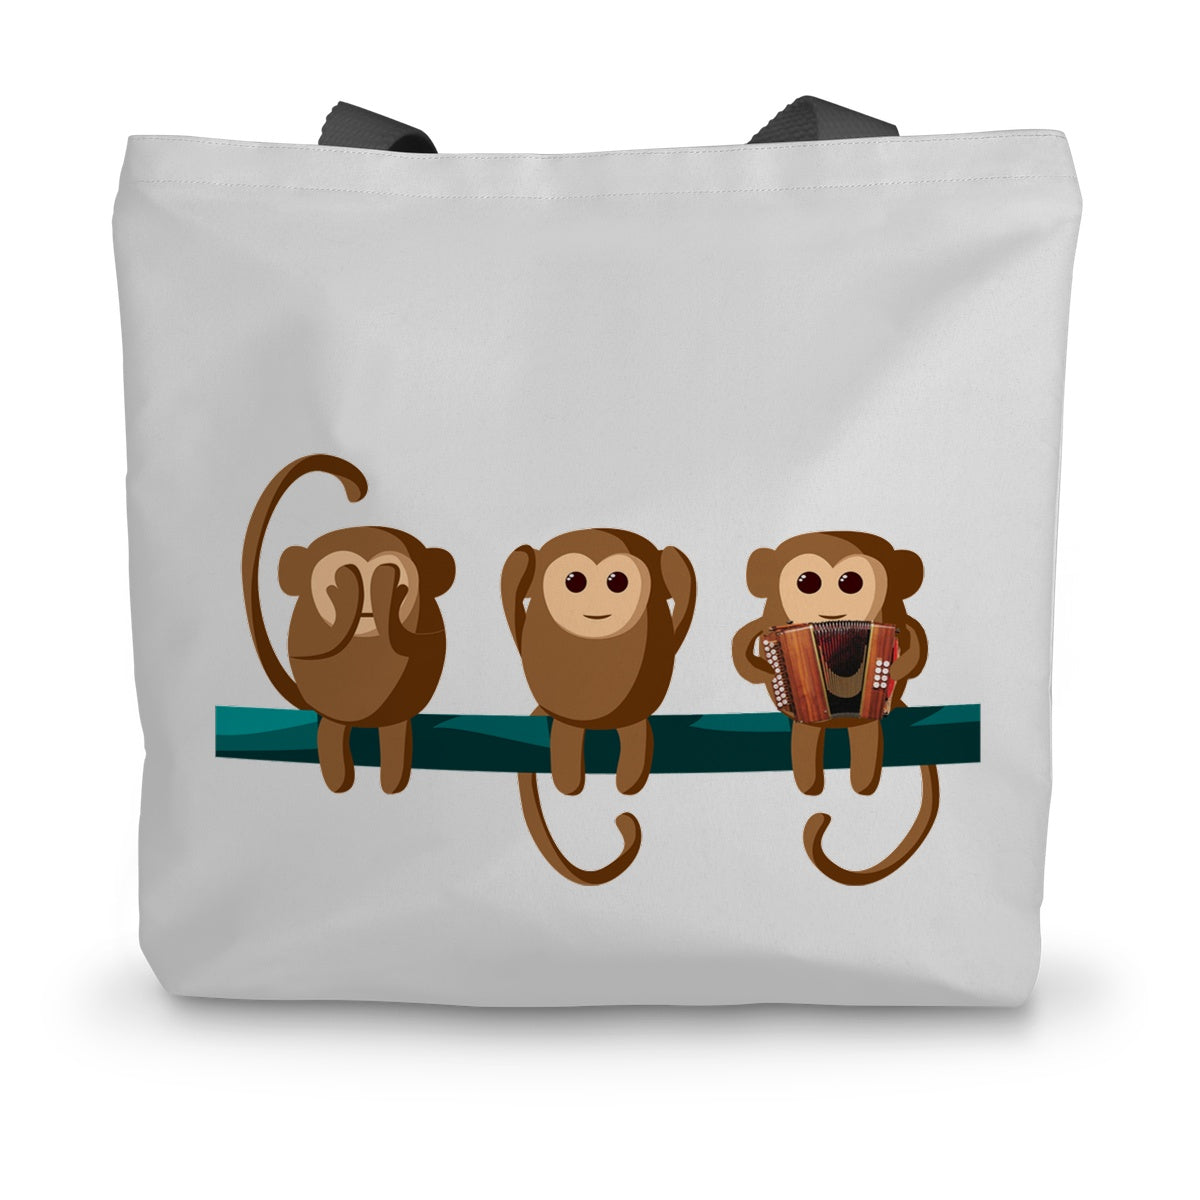 Play No Melodeon Monkeys Canvas Tote Bag